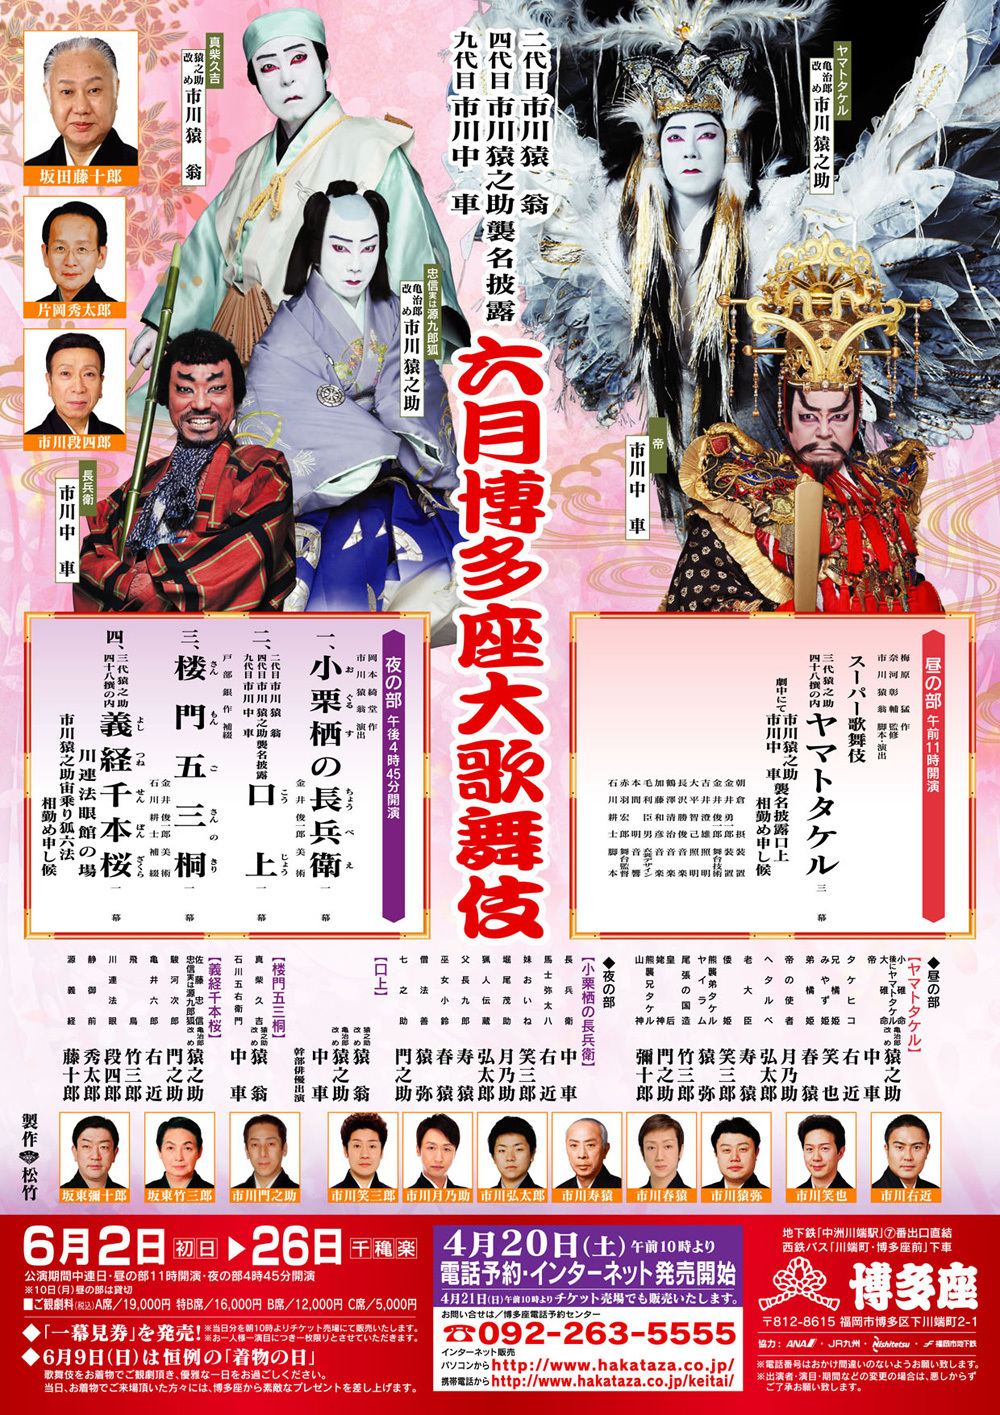 13 6 六月大歌舞伎 博多座 感想 Oboegaki